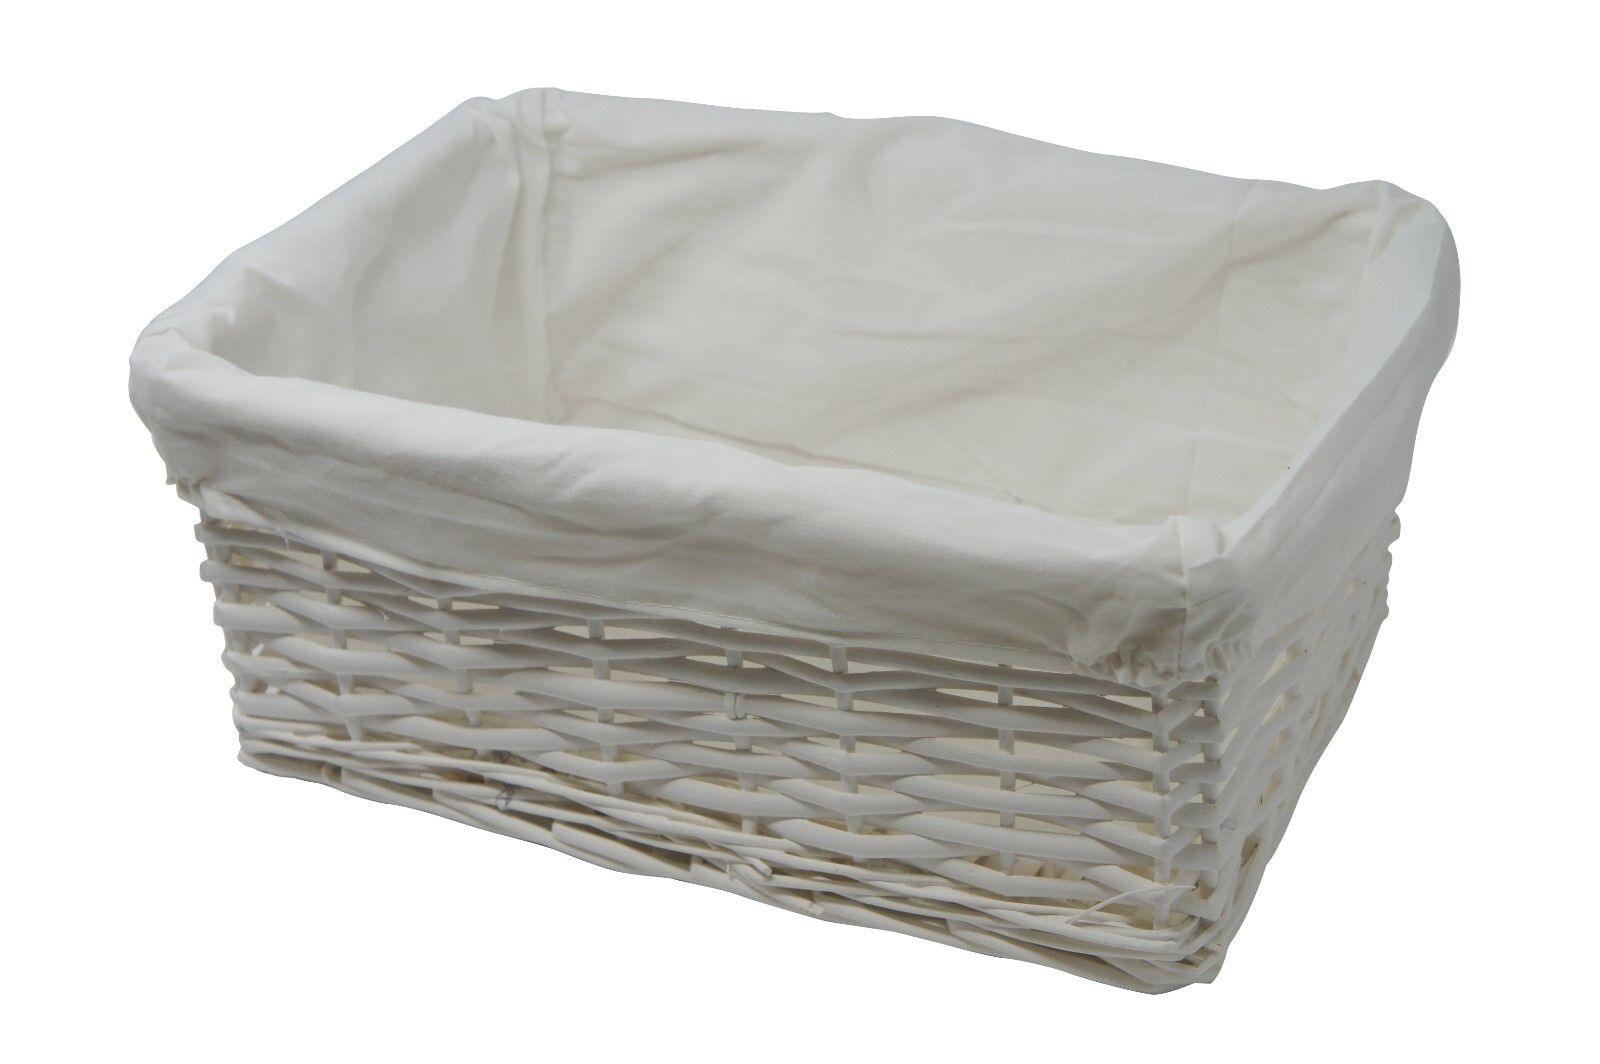 Medio de almacenamiento cesta Cesto Mimbre Blanco con Forro de tela blanca